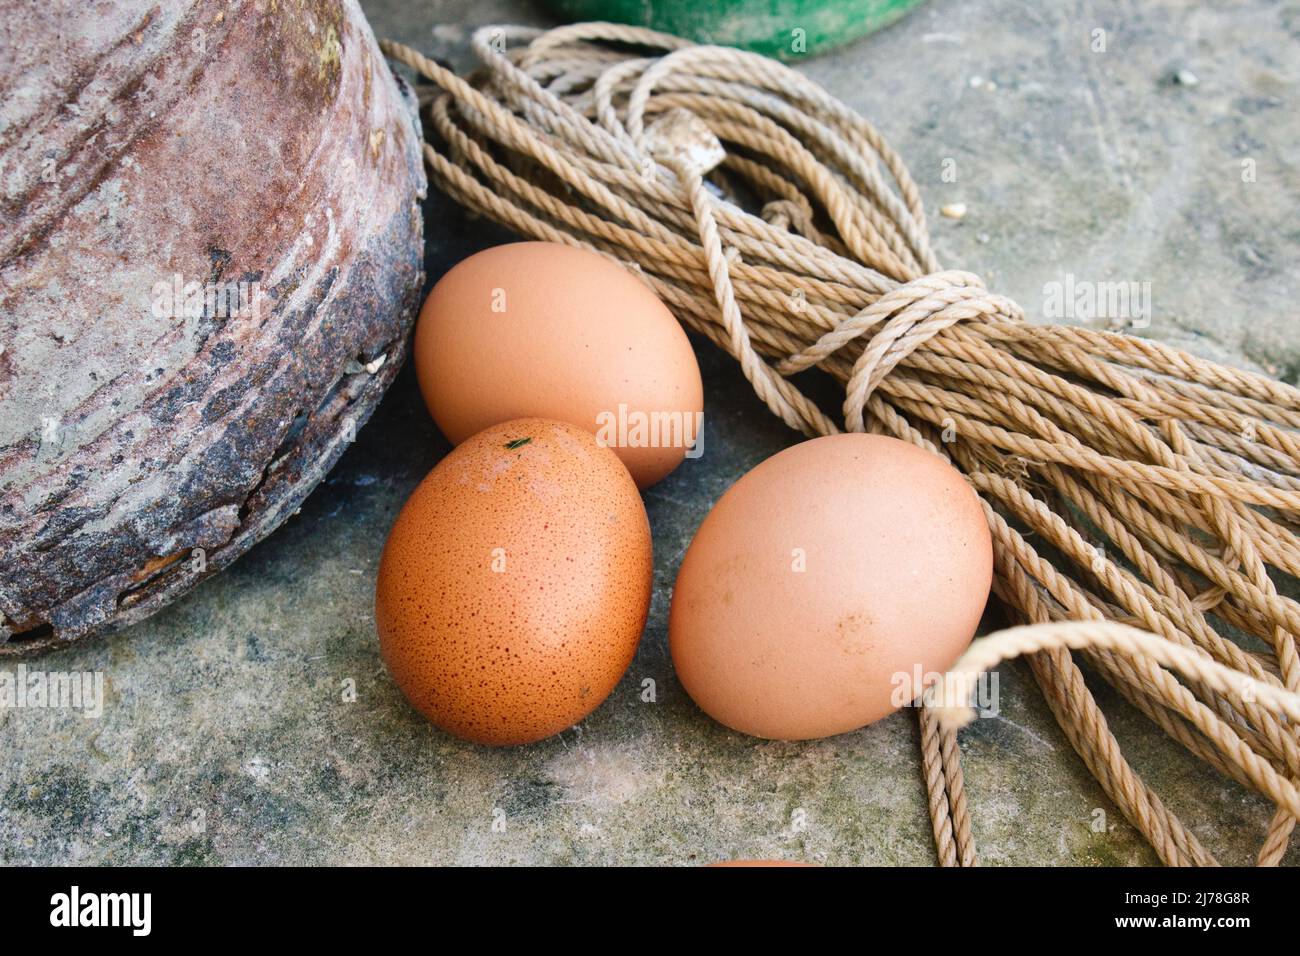 Un piccolo gruppo di tre uova di gallina sul pavimento in un rustico cortile Foto Stock